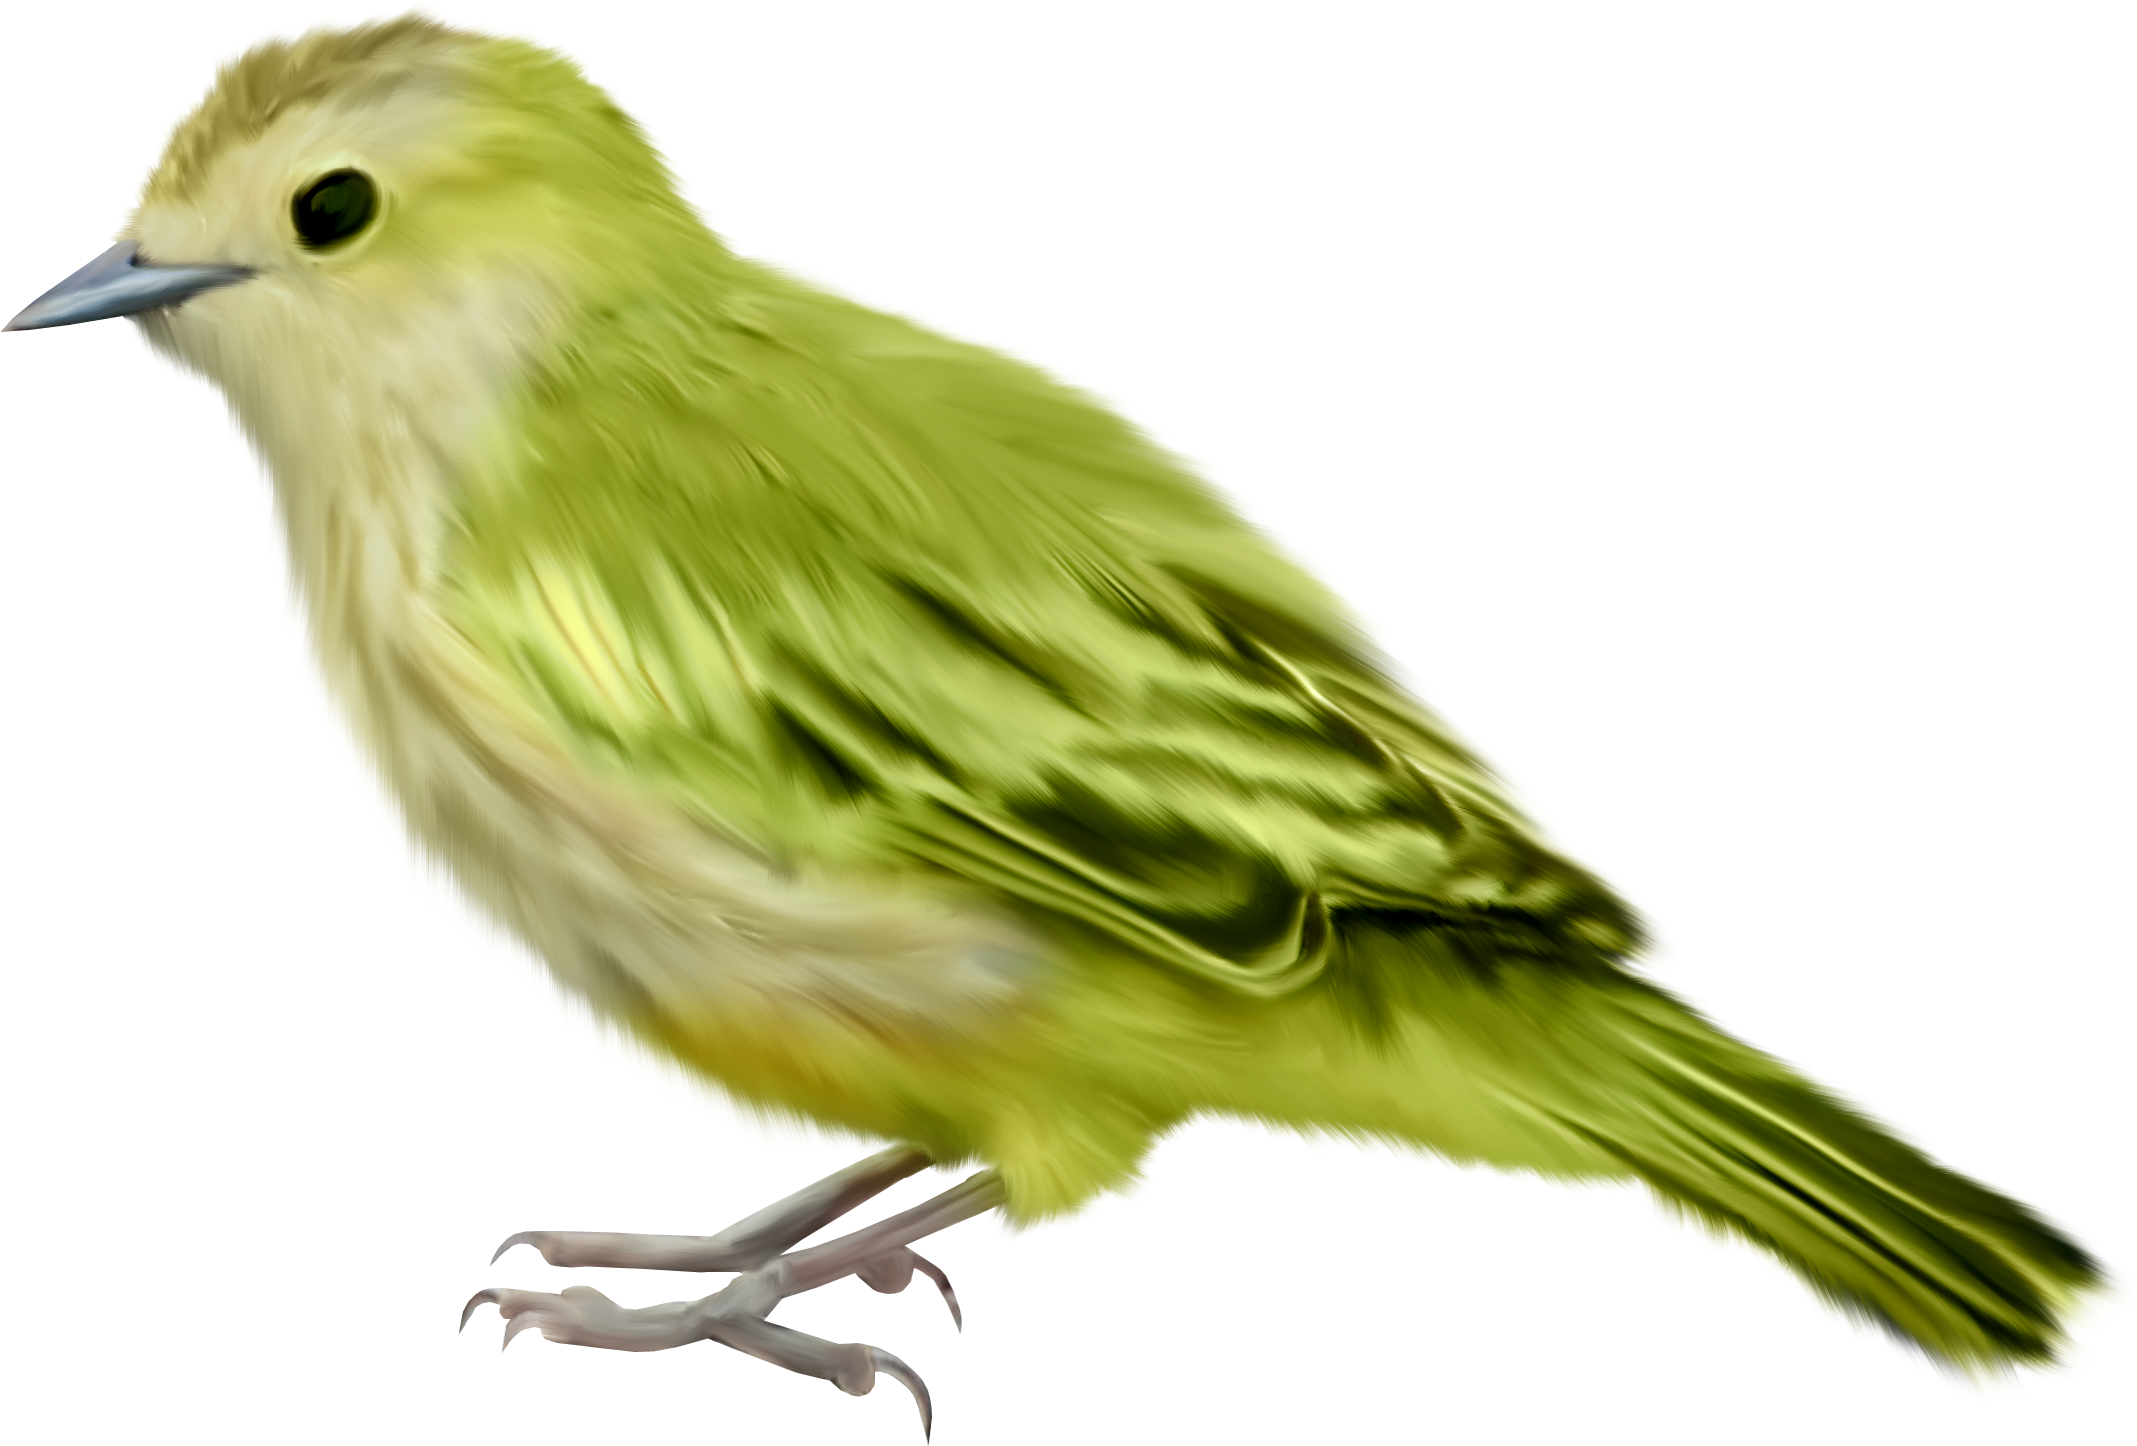 Oiseau vert, paruline jaune